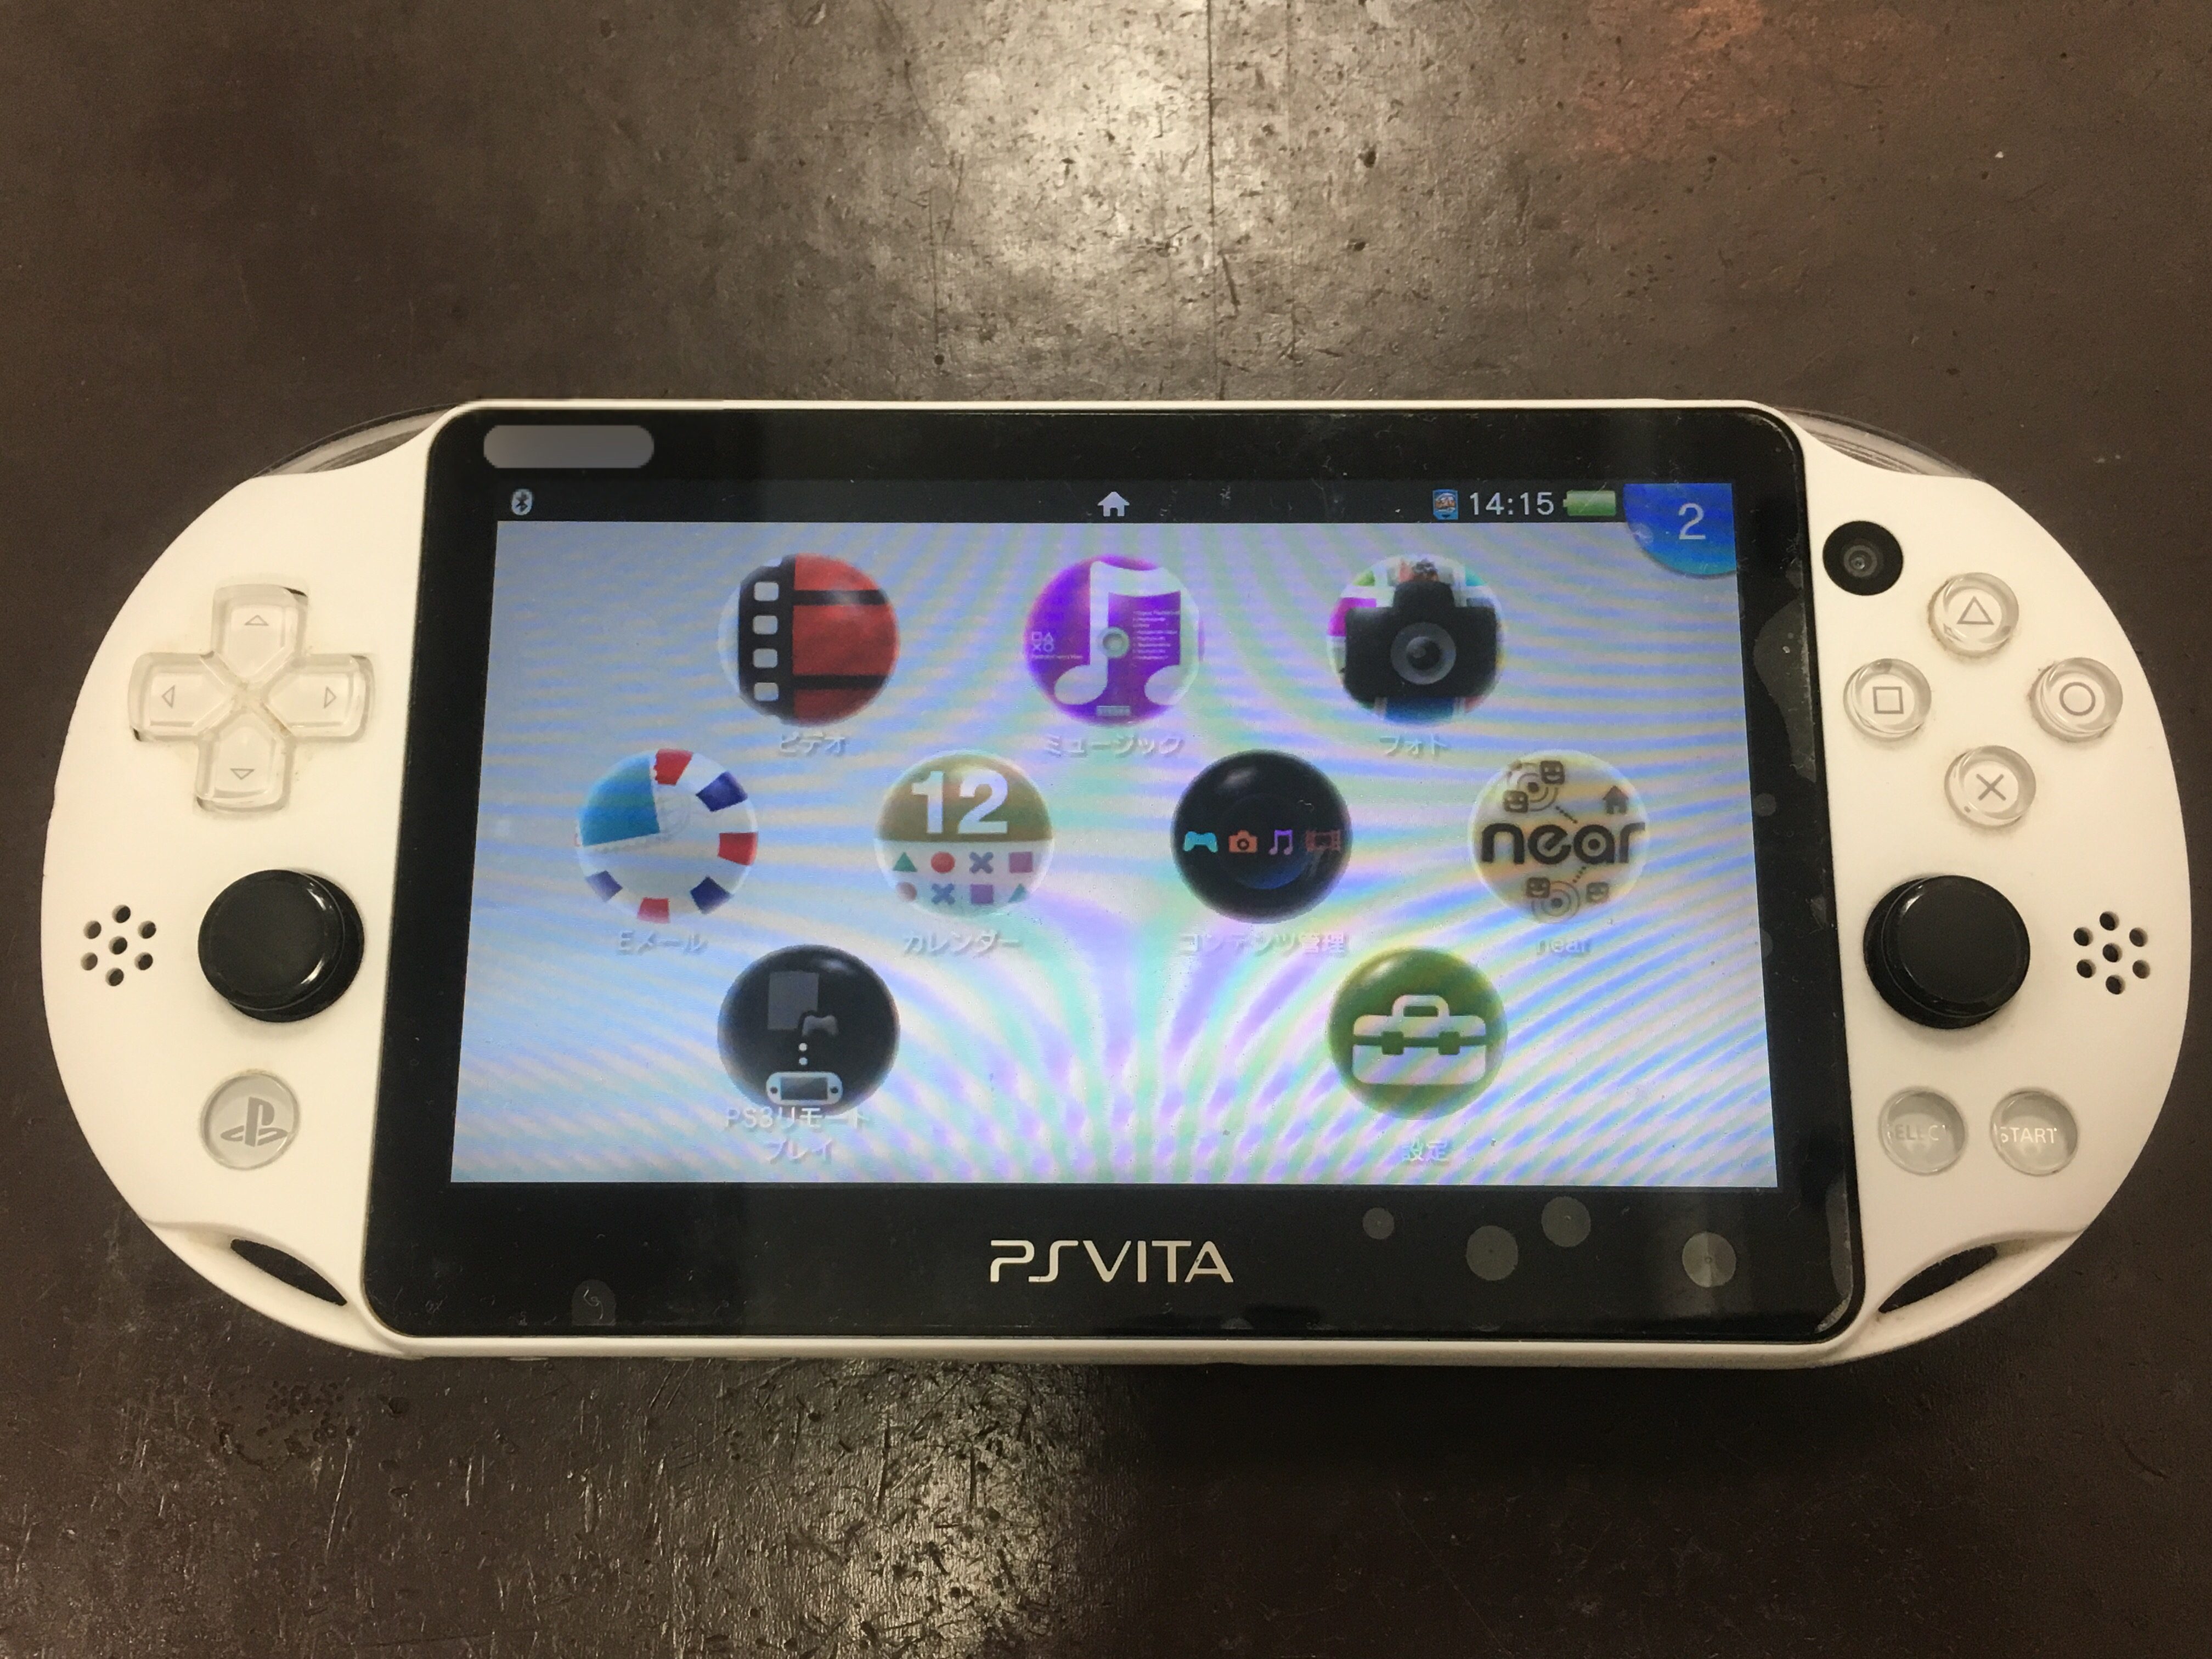 Ps Vita 00のアナログスティックが勝手に動くようになった 部品交換で即日解決しました Switch Nintendo3ds Psp 修理のゲームホスピタル Switch Nintendo3ds ニンテンドーds Psp 修理